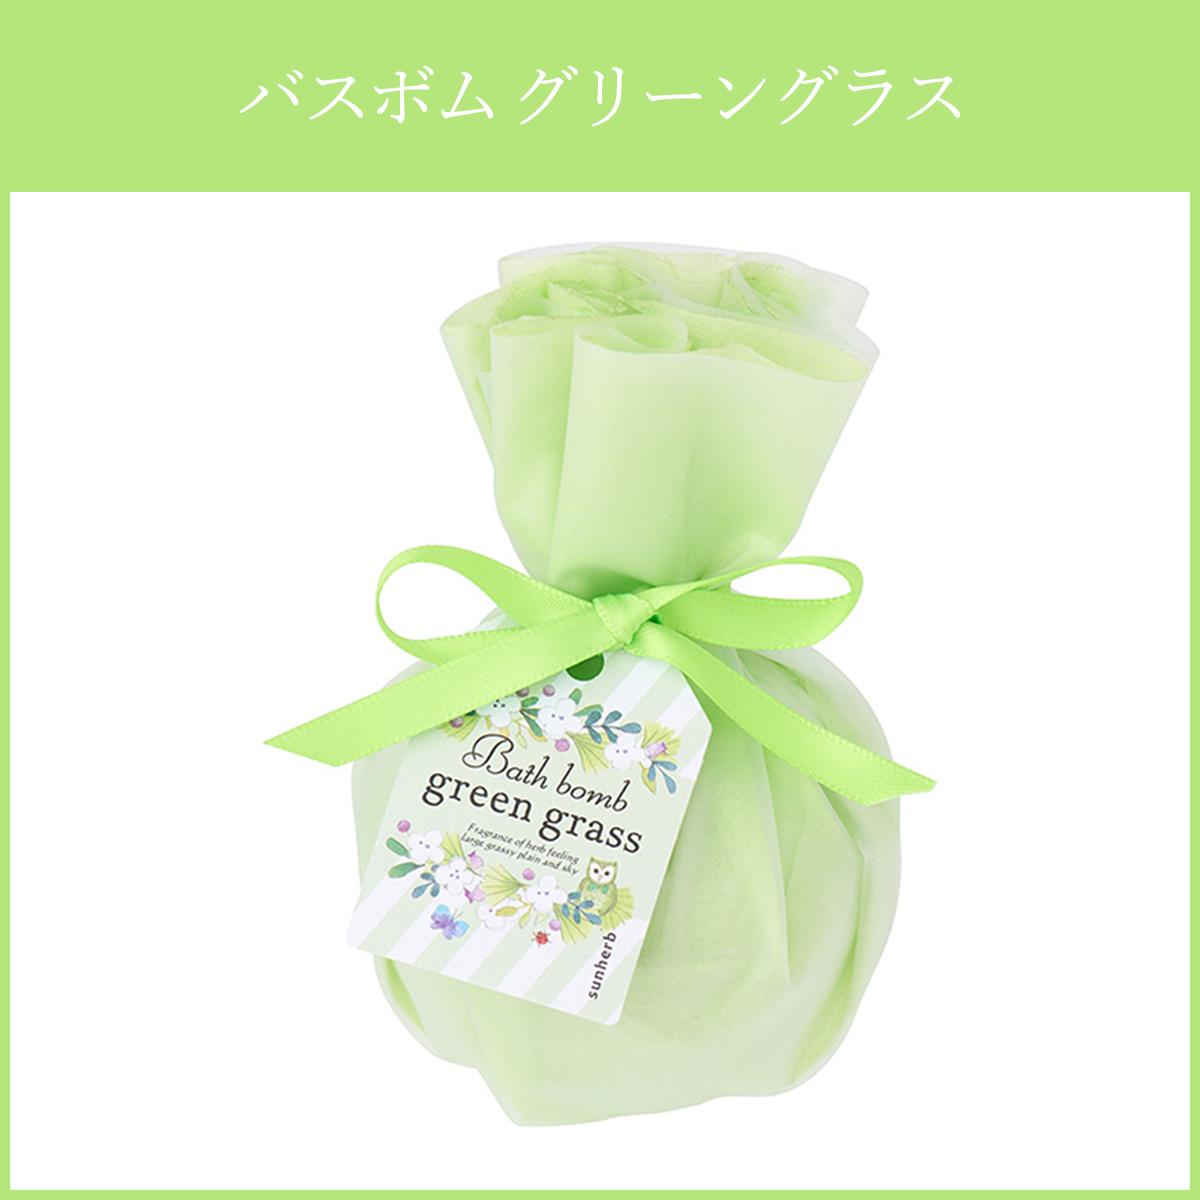 【楽天市場】入浴剤ギフト GRASS GREEN バスソルト プレゼント BOX入り 送料無料 女性 プレゼント オススメです。お歳暮 御歳暮